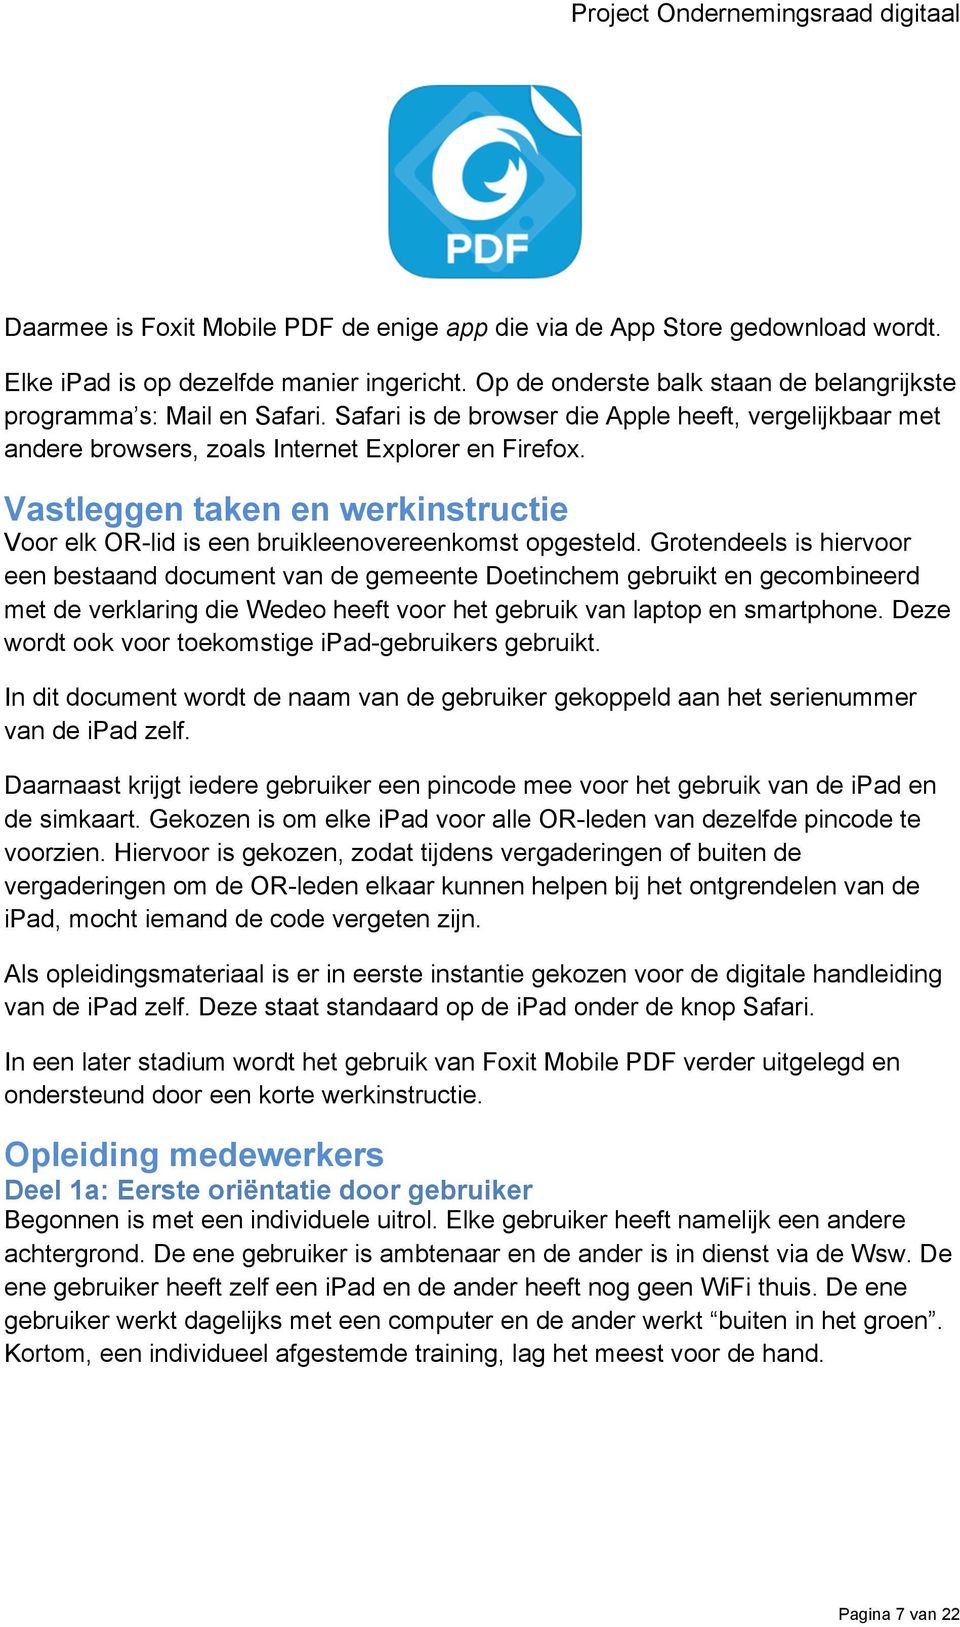 Grotendeels is hiervoor een bestaand document van de gemeente Doetinchem gebruikt en gecombineerd met de verklaring die Wedeo heeft voor het gebruik van laptop en smartphone.